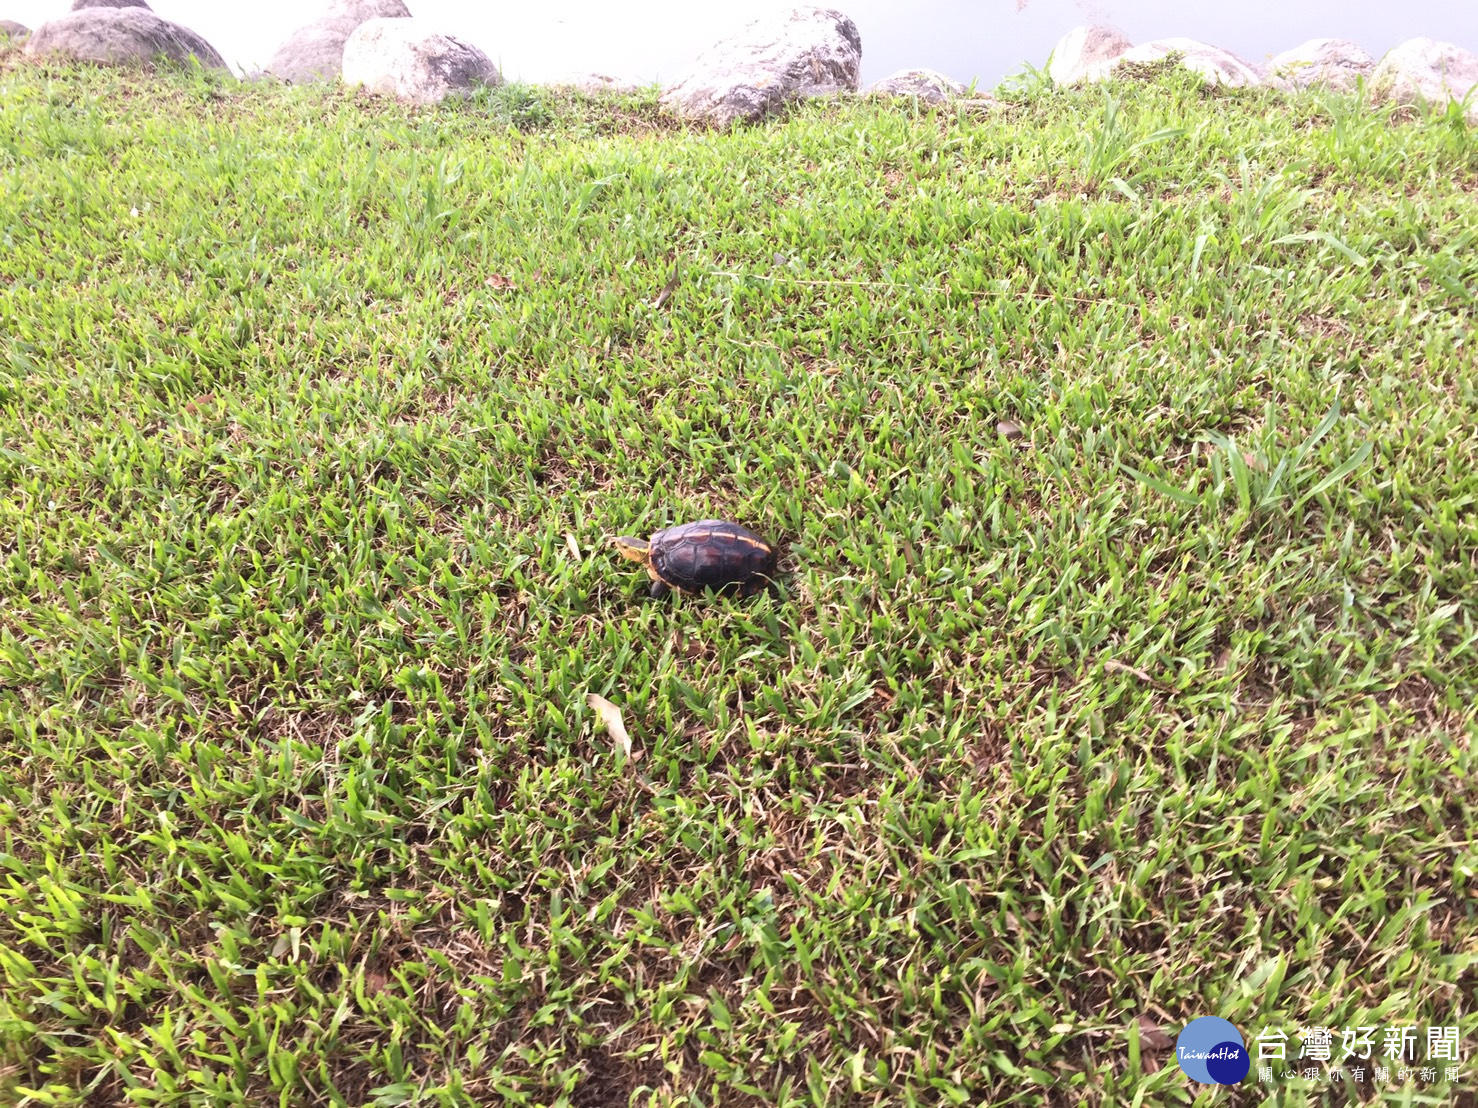 食蛇龜在公園草地上曬太陽